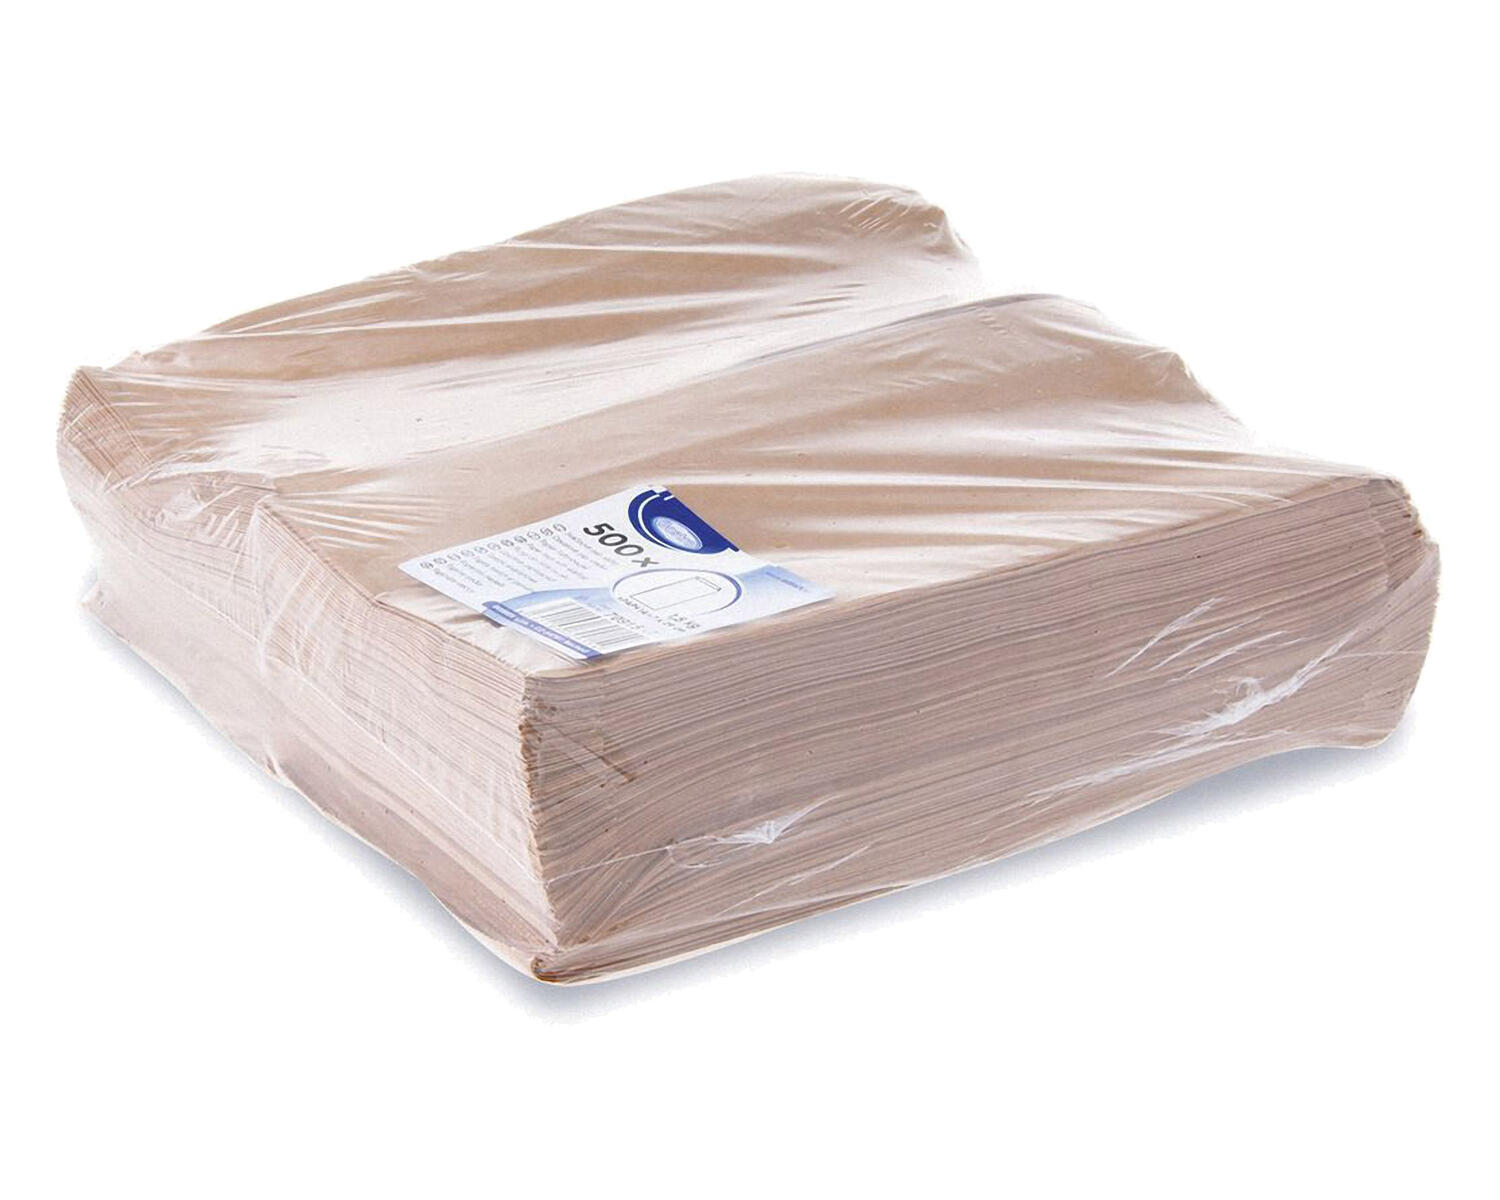 Papierfaltenbeutel Papiertten braun 14+7 x 29 cm fr ca. 1,5kg Inhalt, 100 Stk.